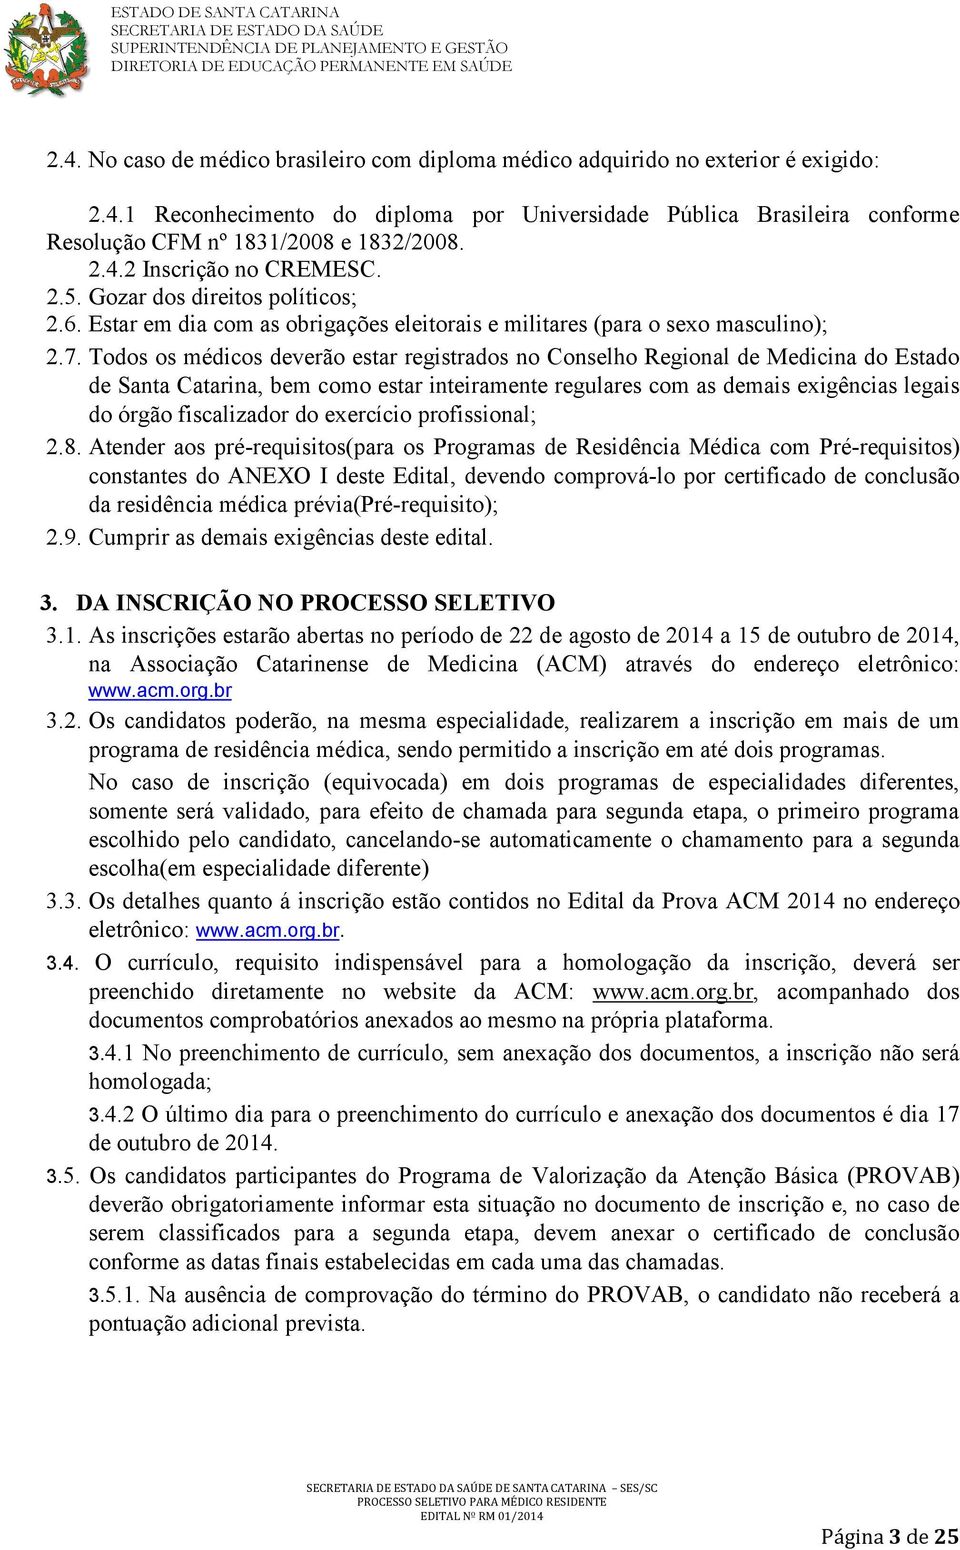 Todos os médicos deverão estar registrados no Conselho Regional de Medicina do Estado de Santa Catarina, bem como estar inteiramente regulares com as demais exigências legais do órgão fiscalizador do